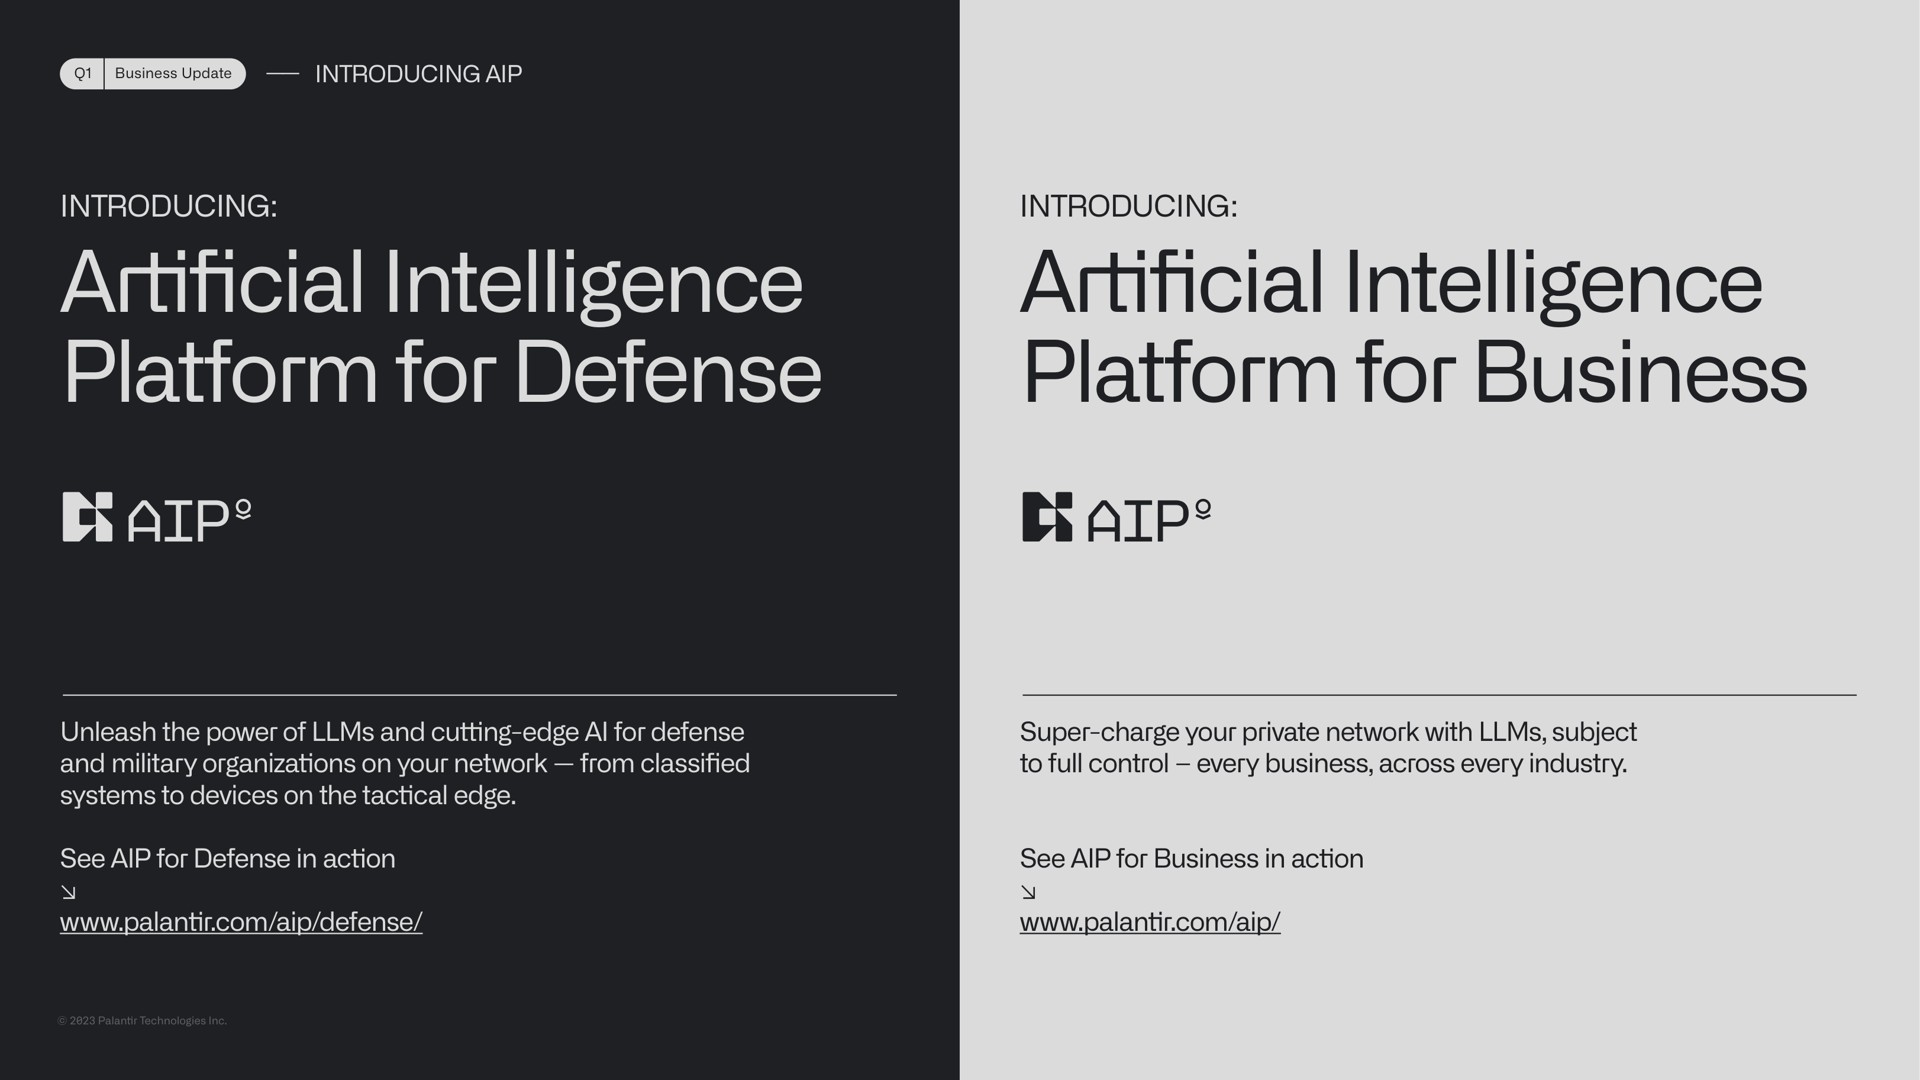 introducing introducing intelligence platform for defense intelligence platform for business artificial artificial tor | Palantir